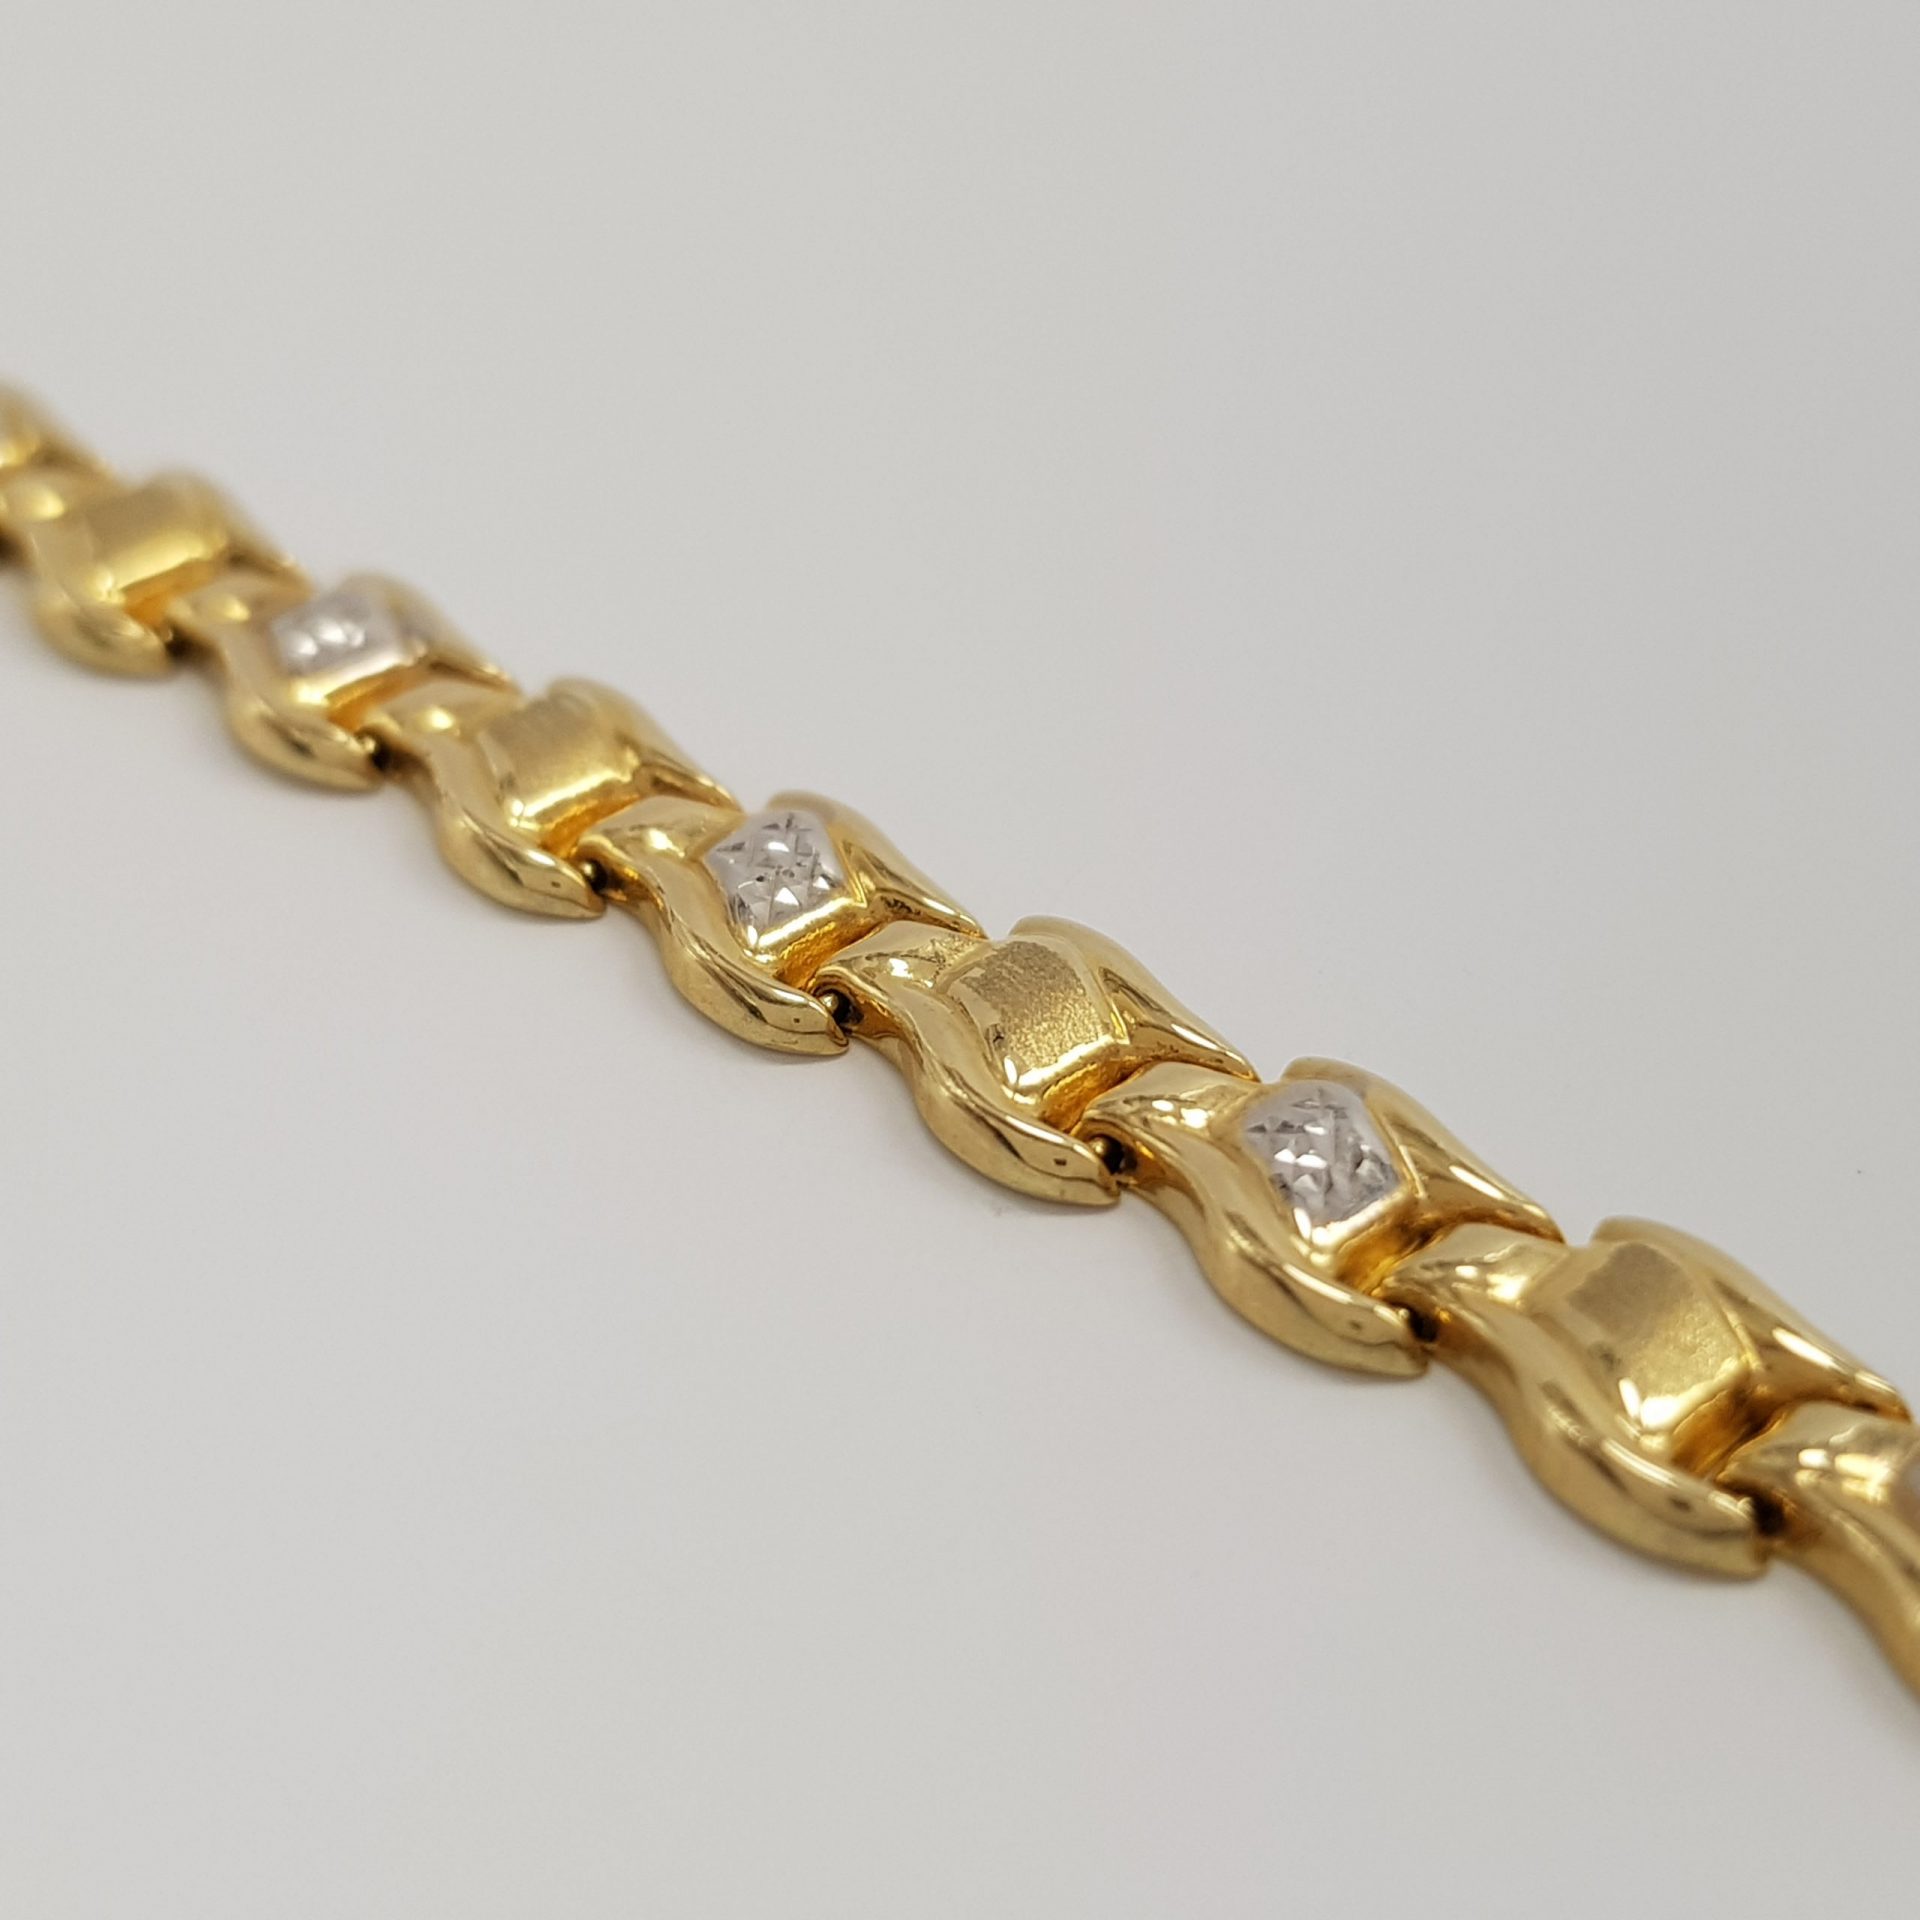 Okazała bransoletka złota wykonana z żółtego złota z dodatkiem białego